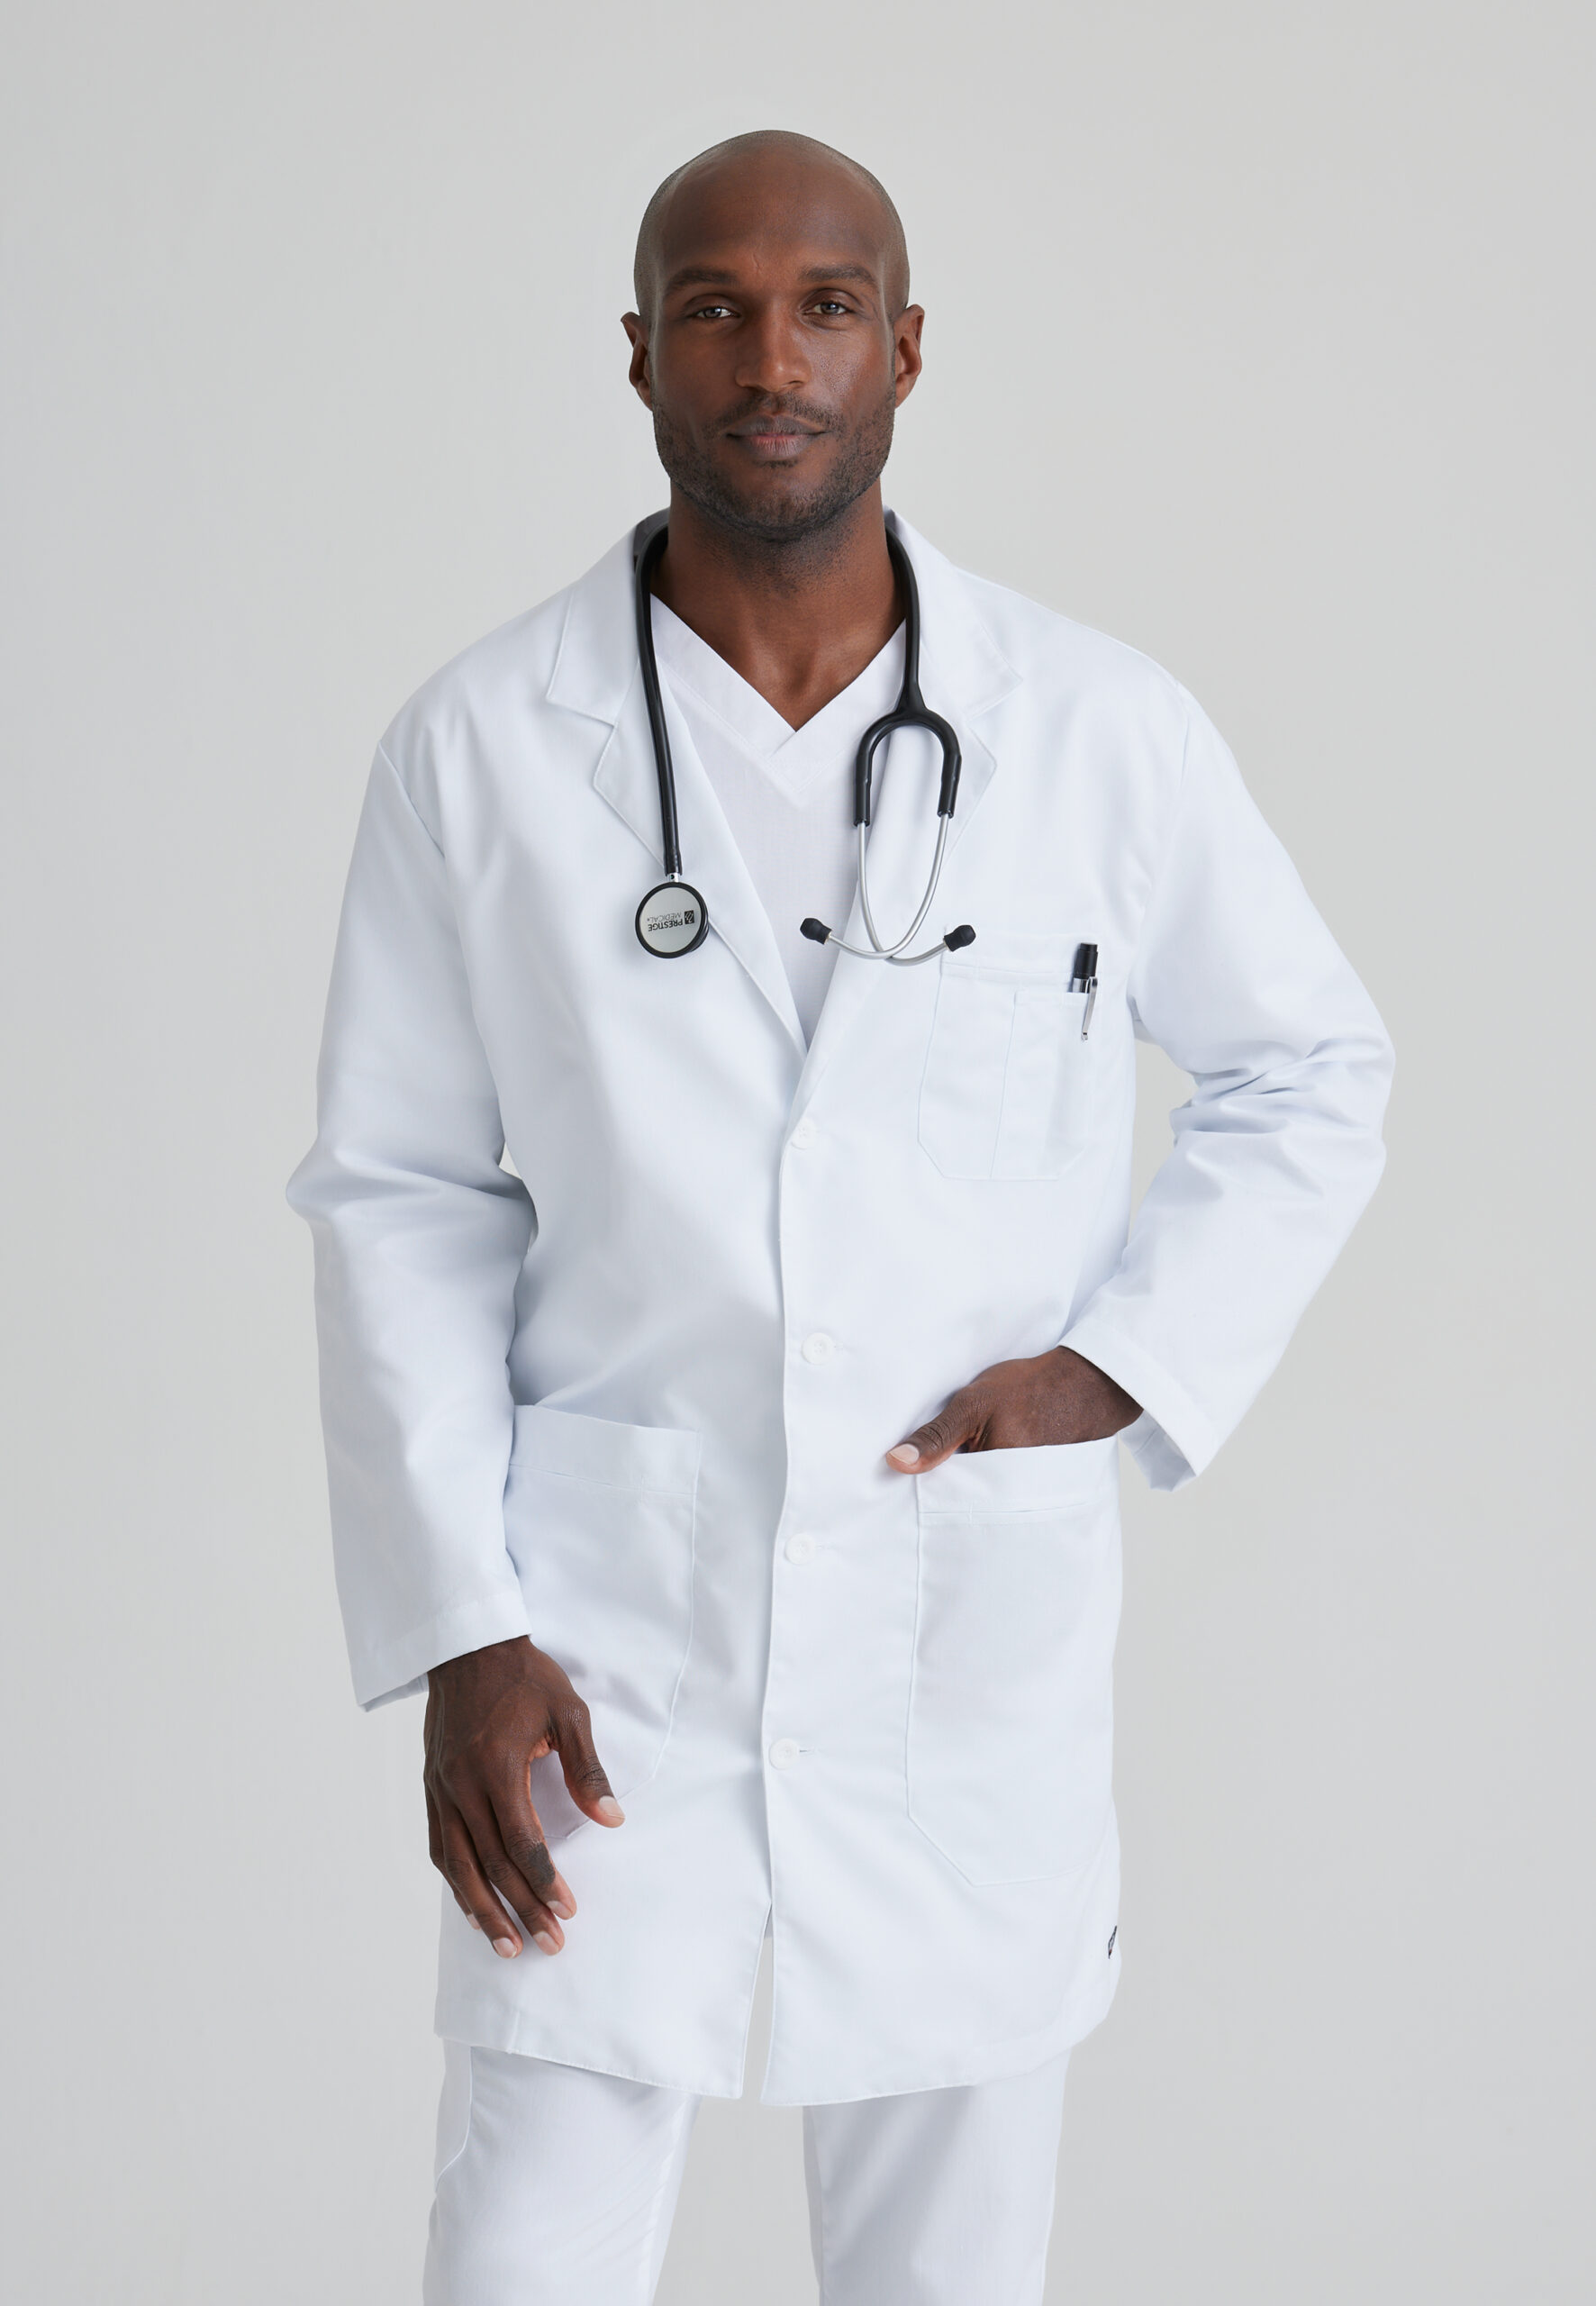 Vittorio uniformes- Bata laboratorio o médica blanca